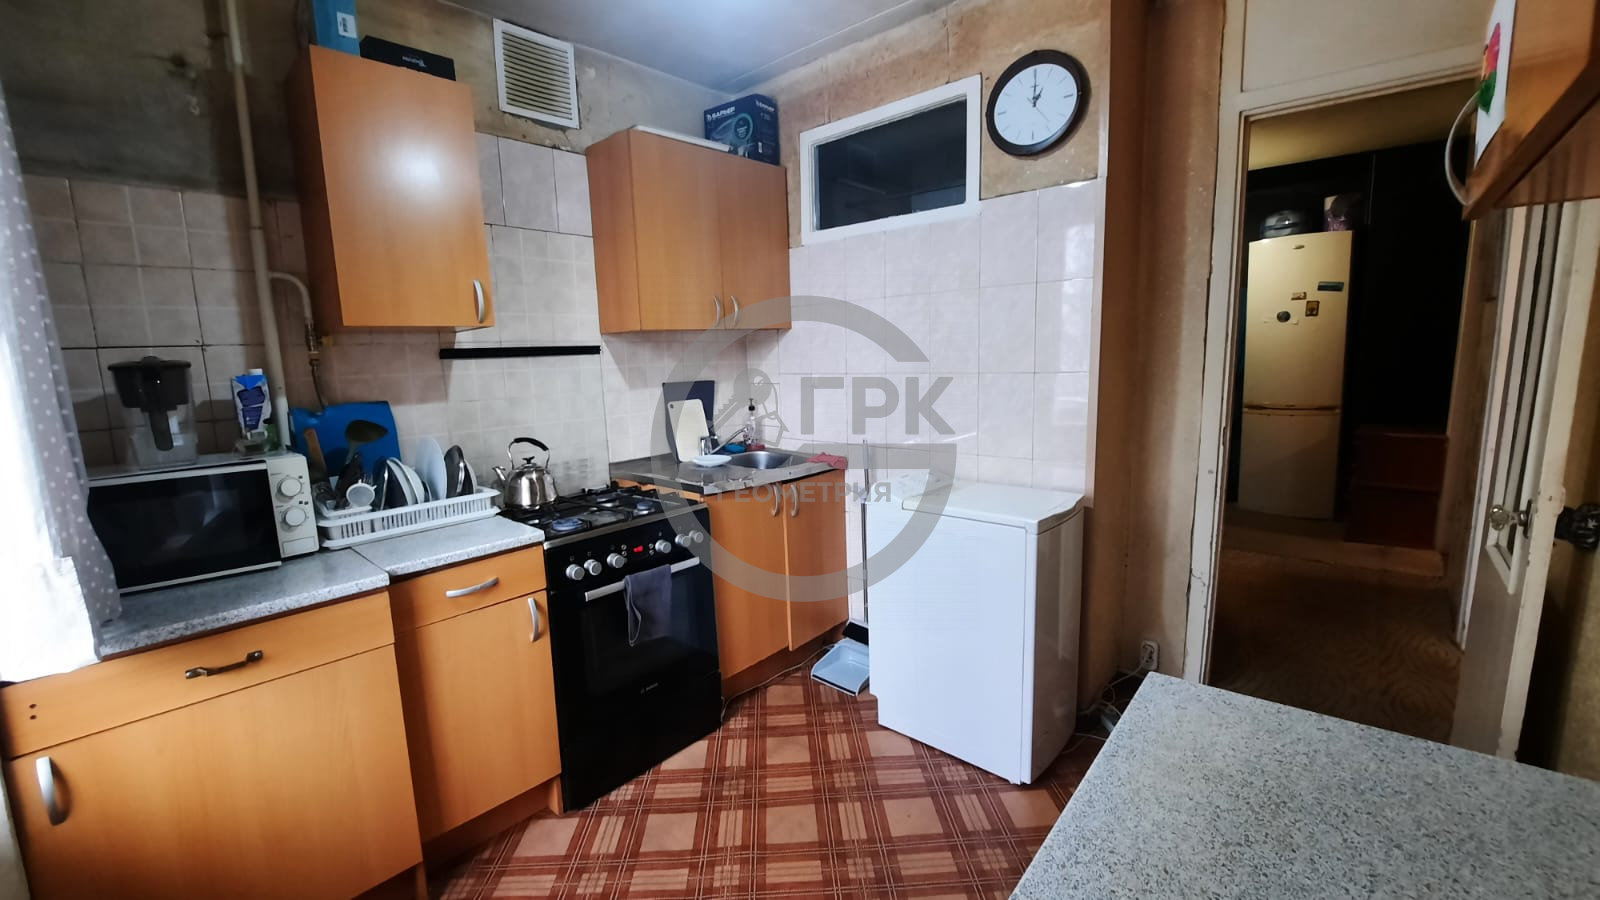 Продам квартиру в Москве по адресу Болотниковская улица, 3к6, площадь 382 квм Недвижимость Москва (Россия)